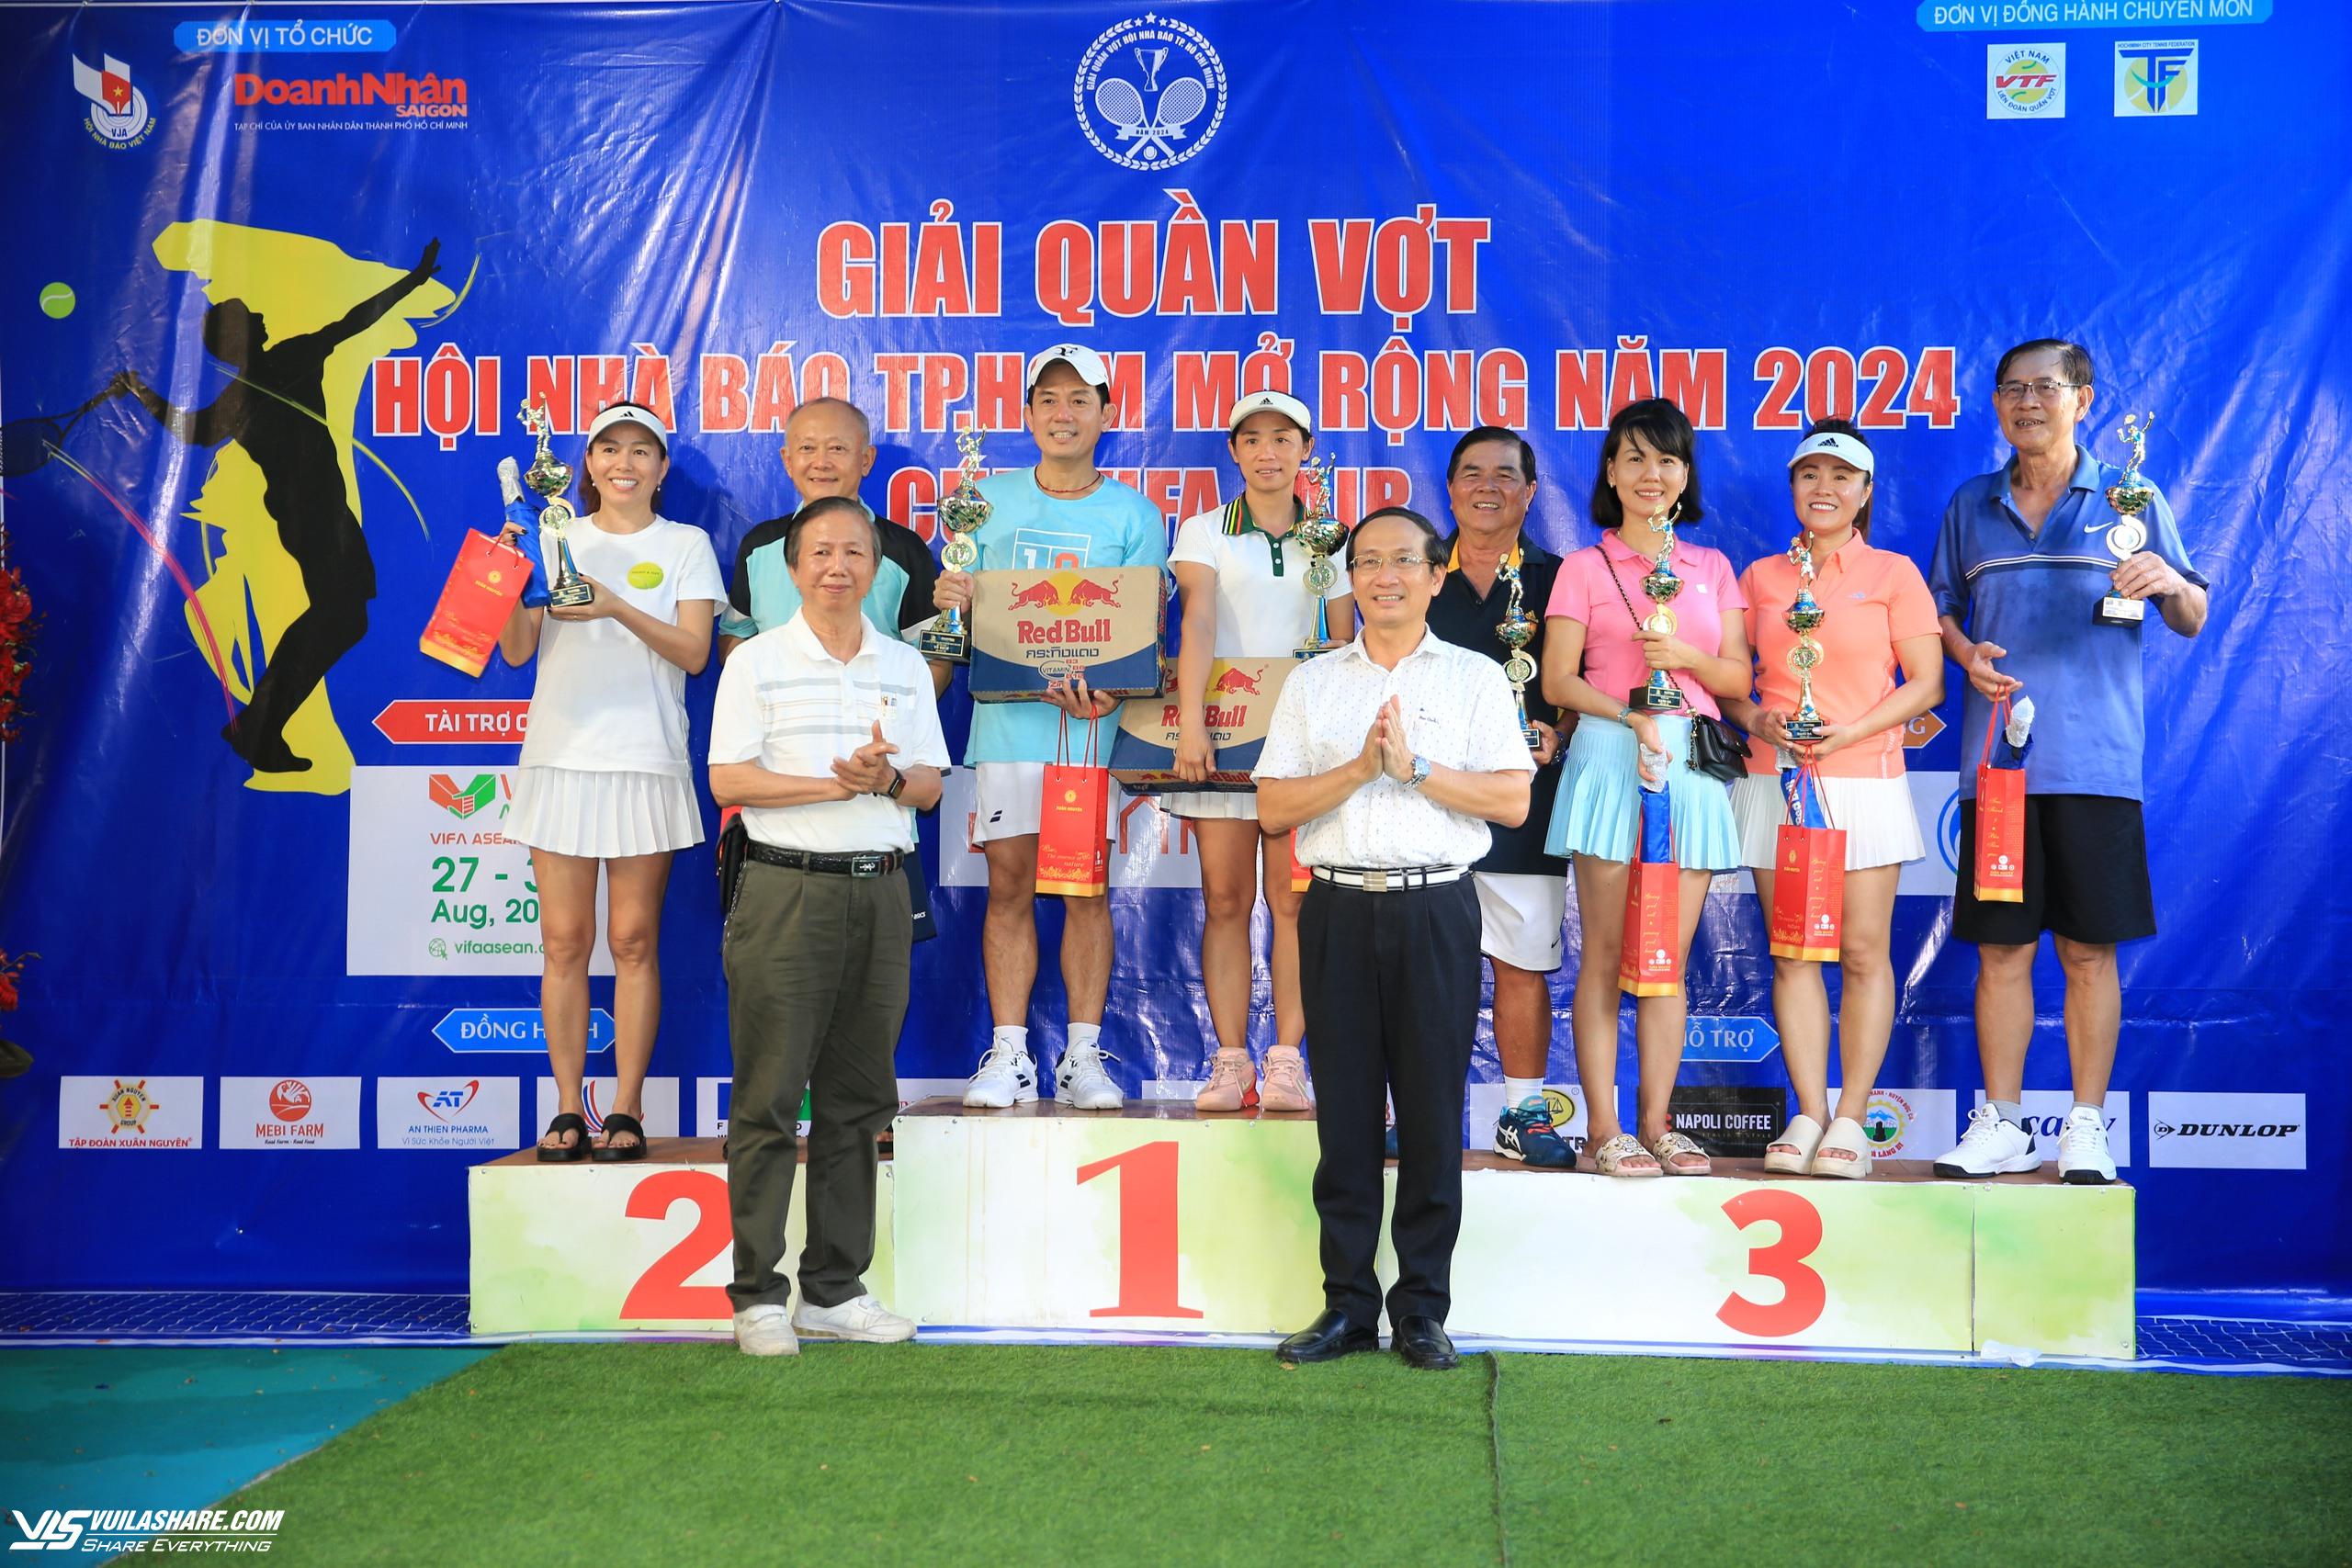 Cả 5 ngôi vô địch đều đổi chủ tại giải quần vợt Hội nhà báo TP.HCM 2024- Ảnh 3.